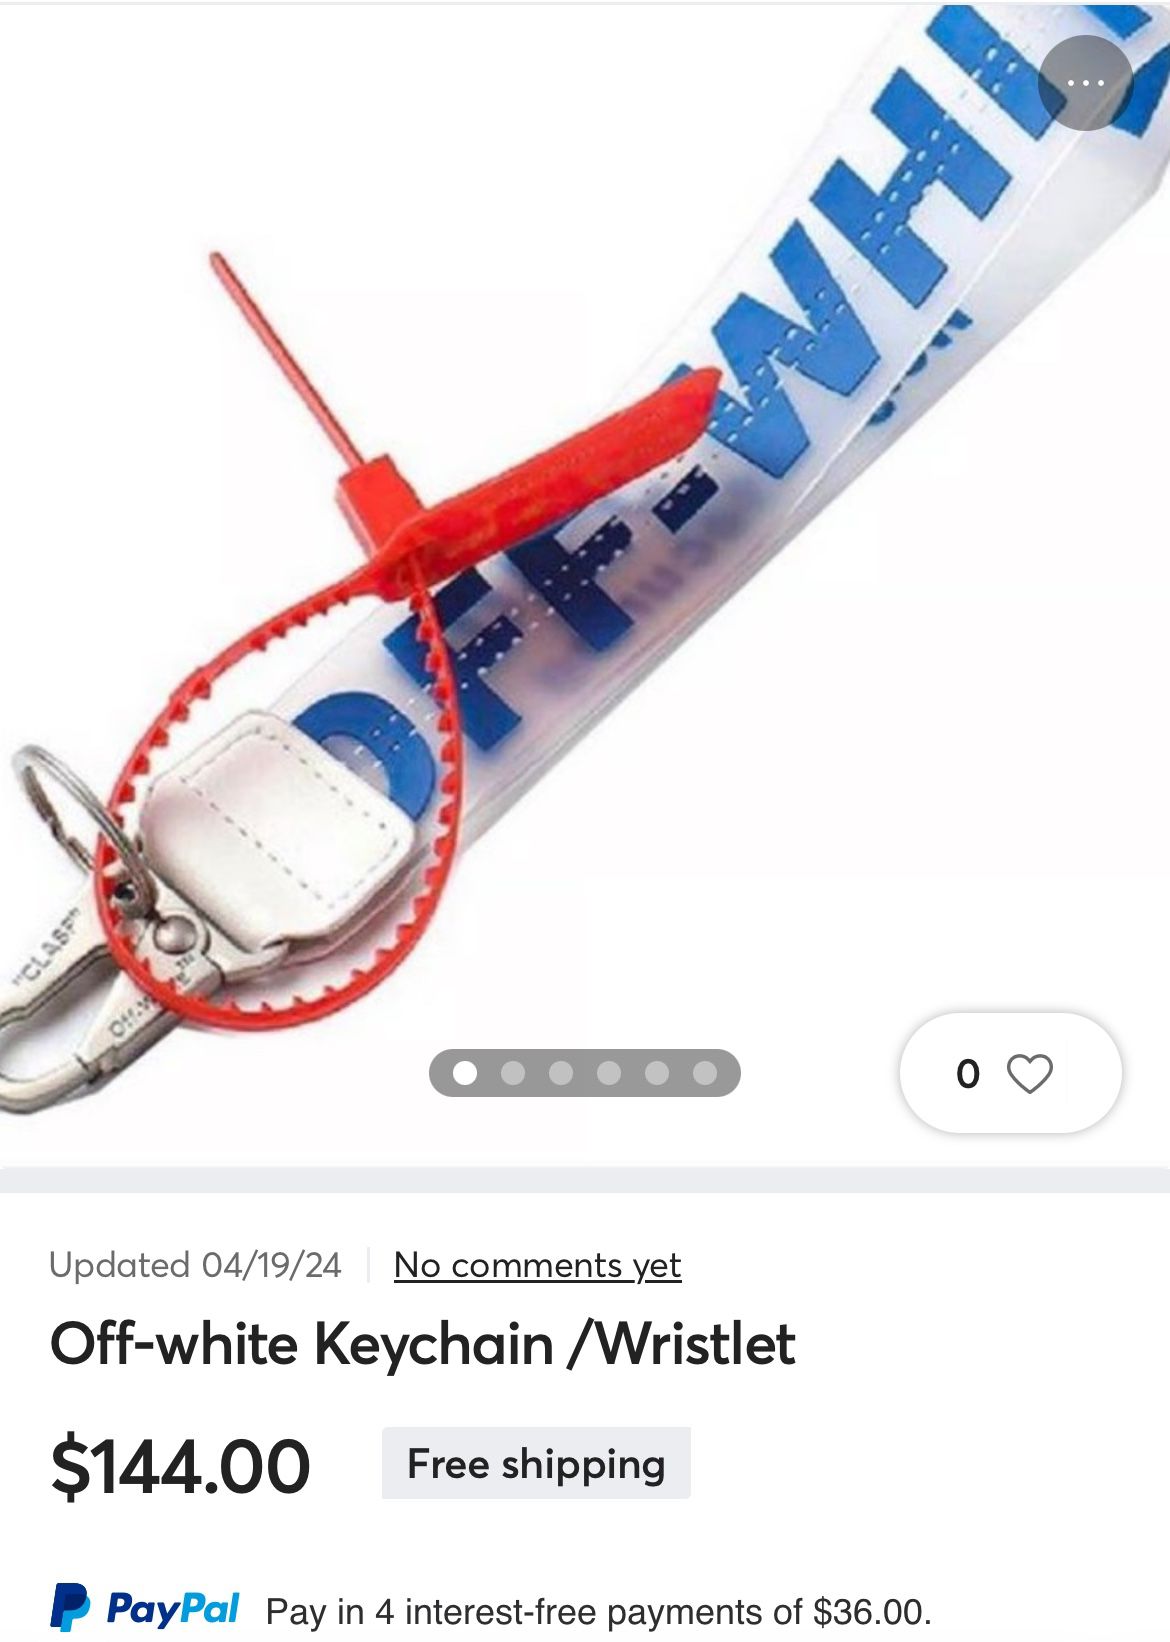 Off-white Keychain